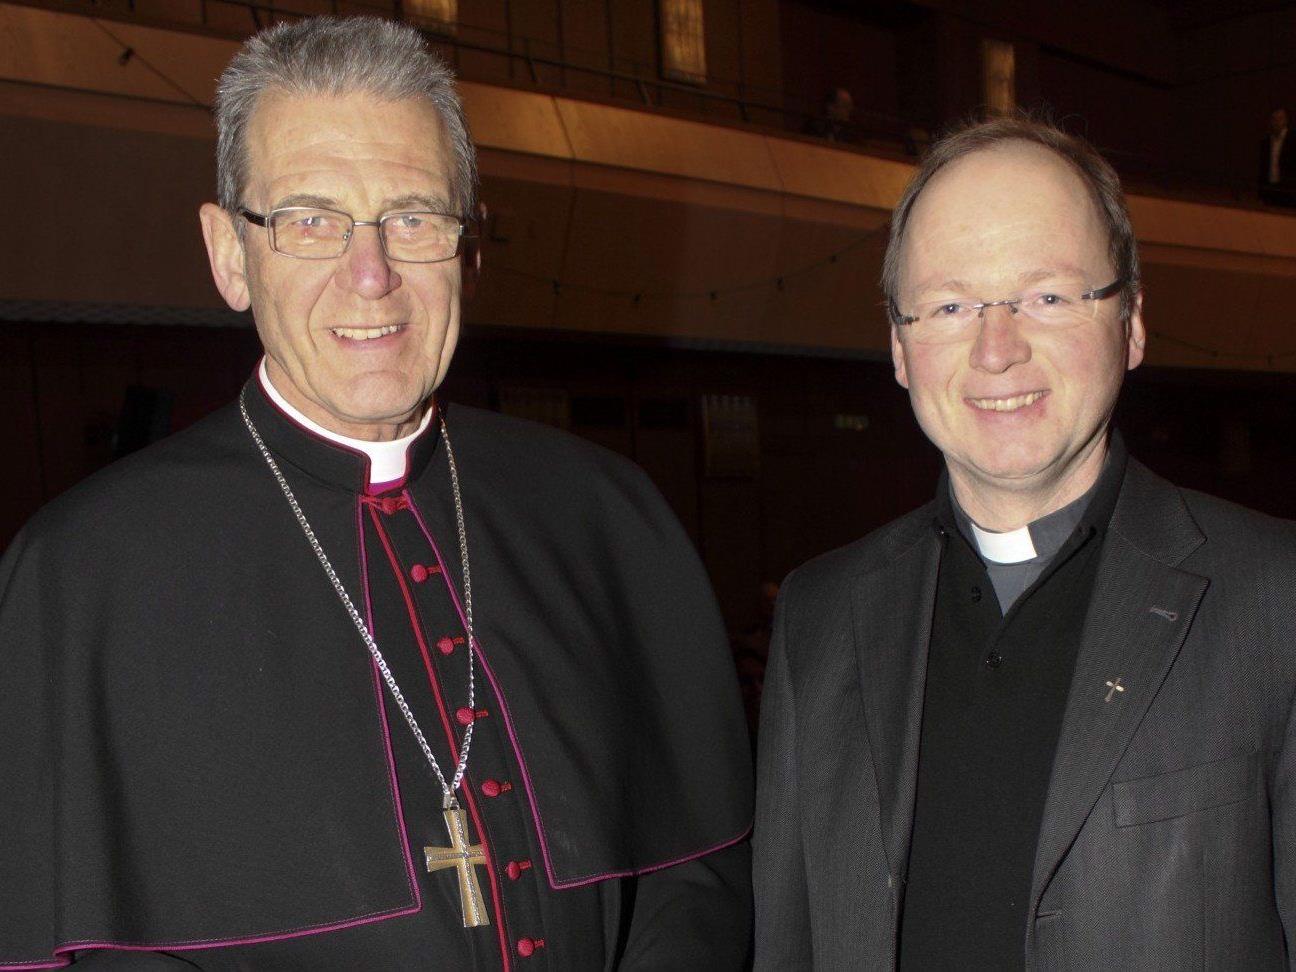 Der alte Bischof und der zukünftige Bischof auf einem Bild.